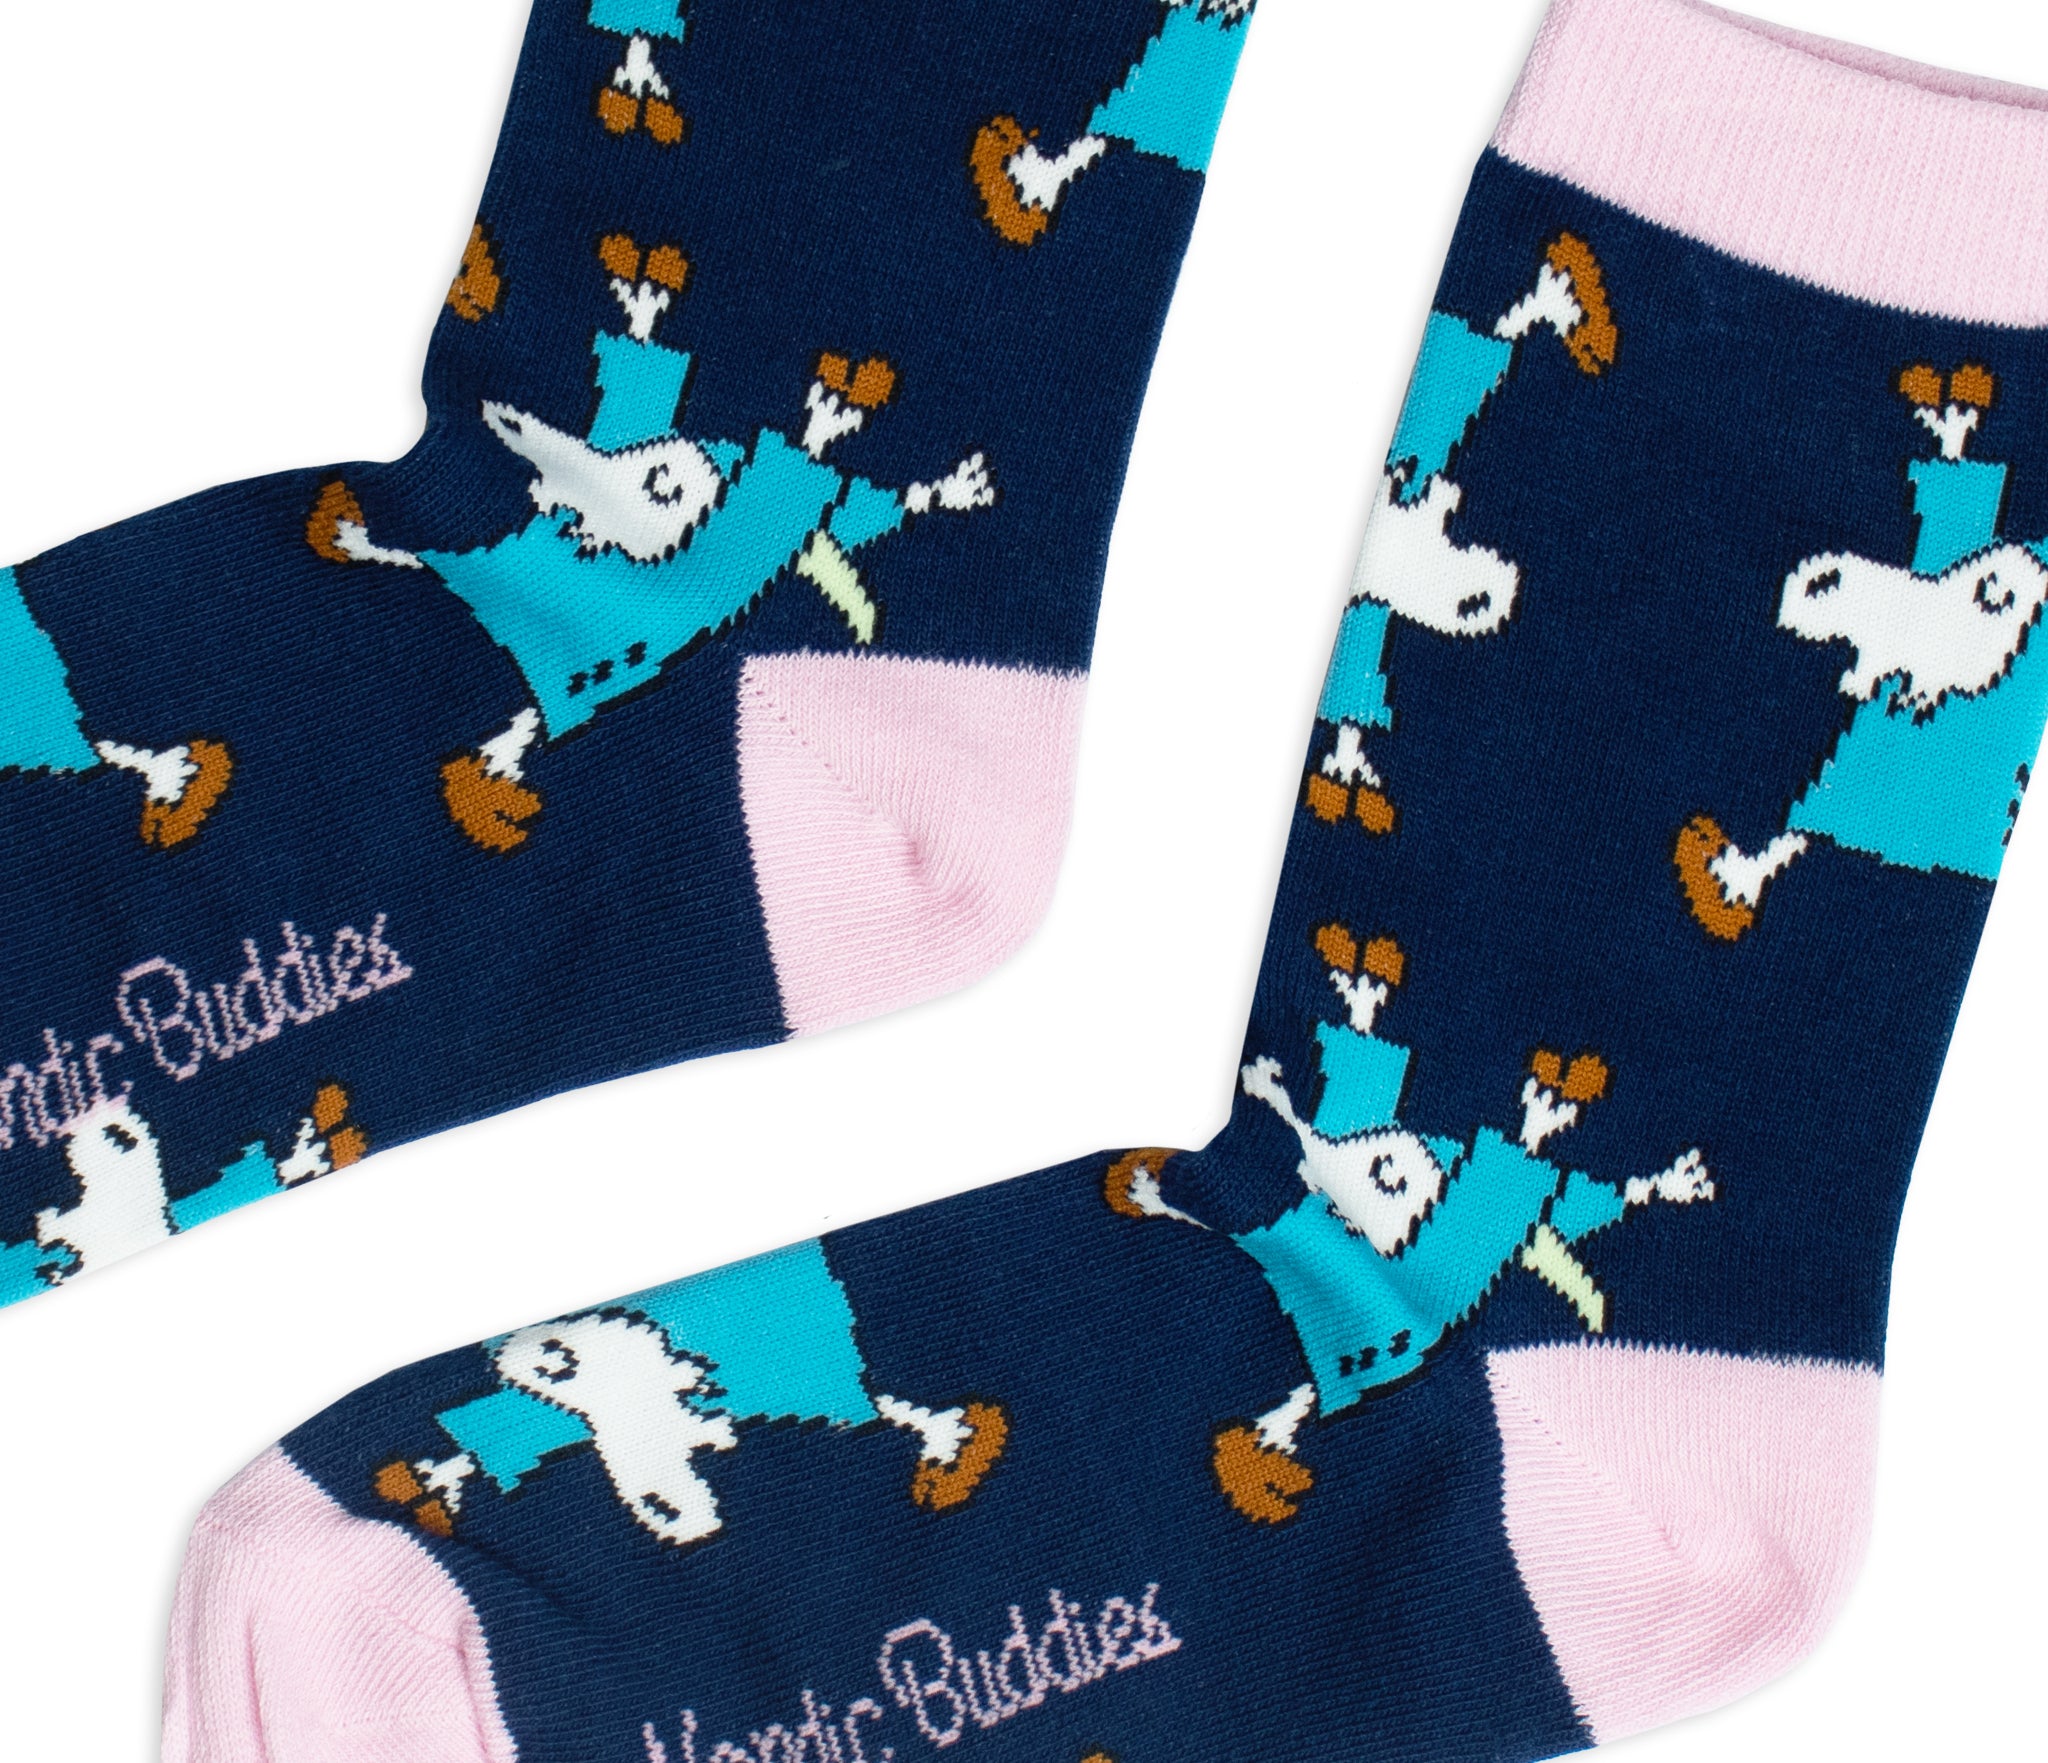 Mr. Clutterbuck Ladies Socks - Navy